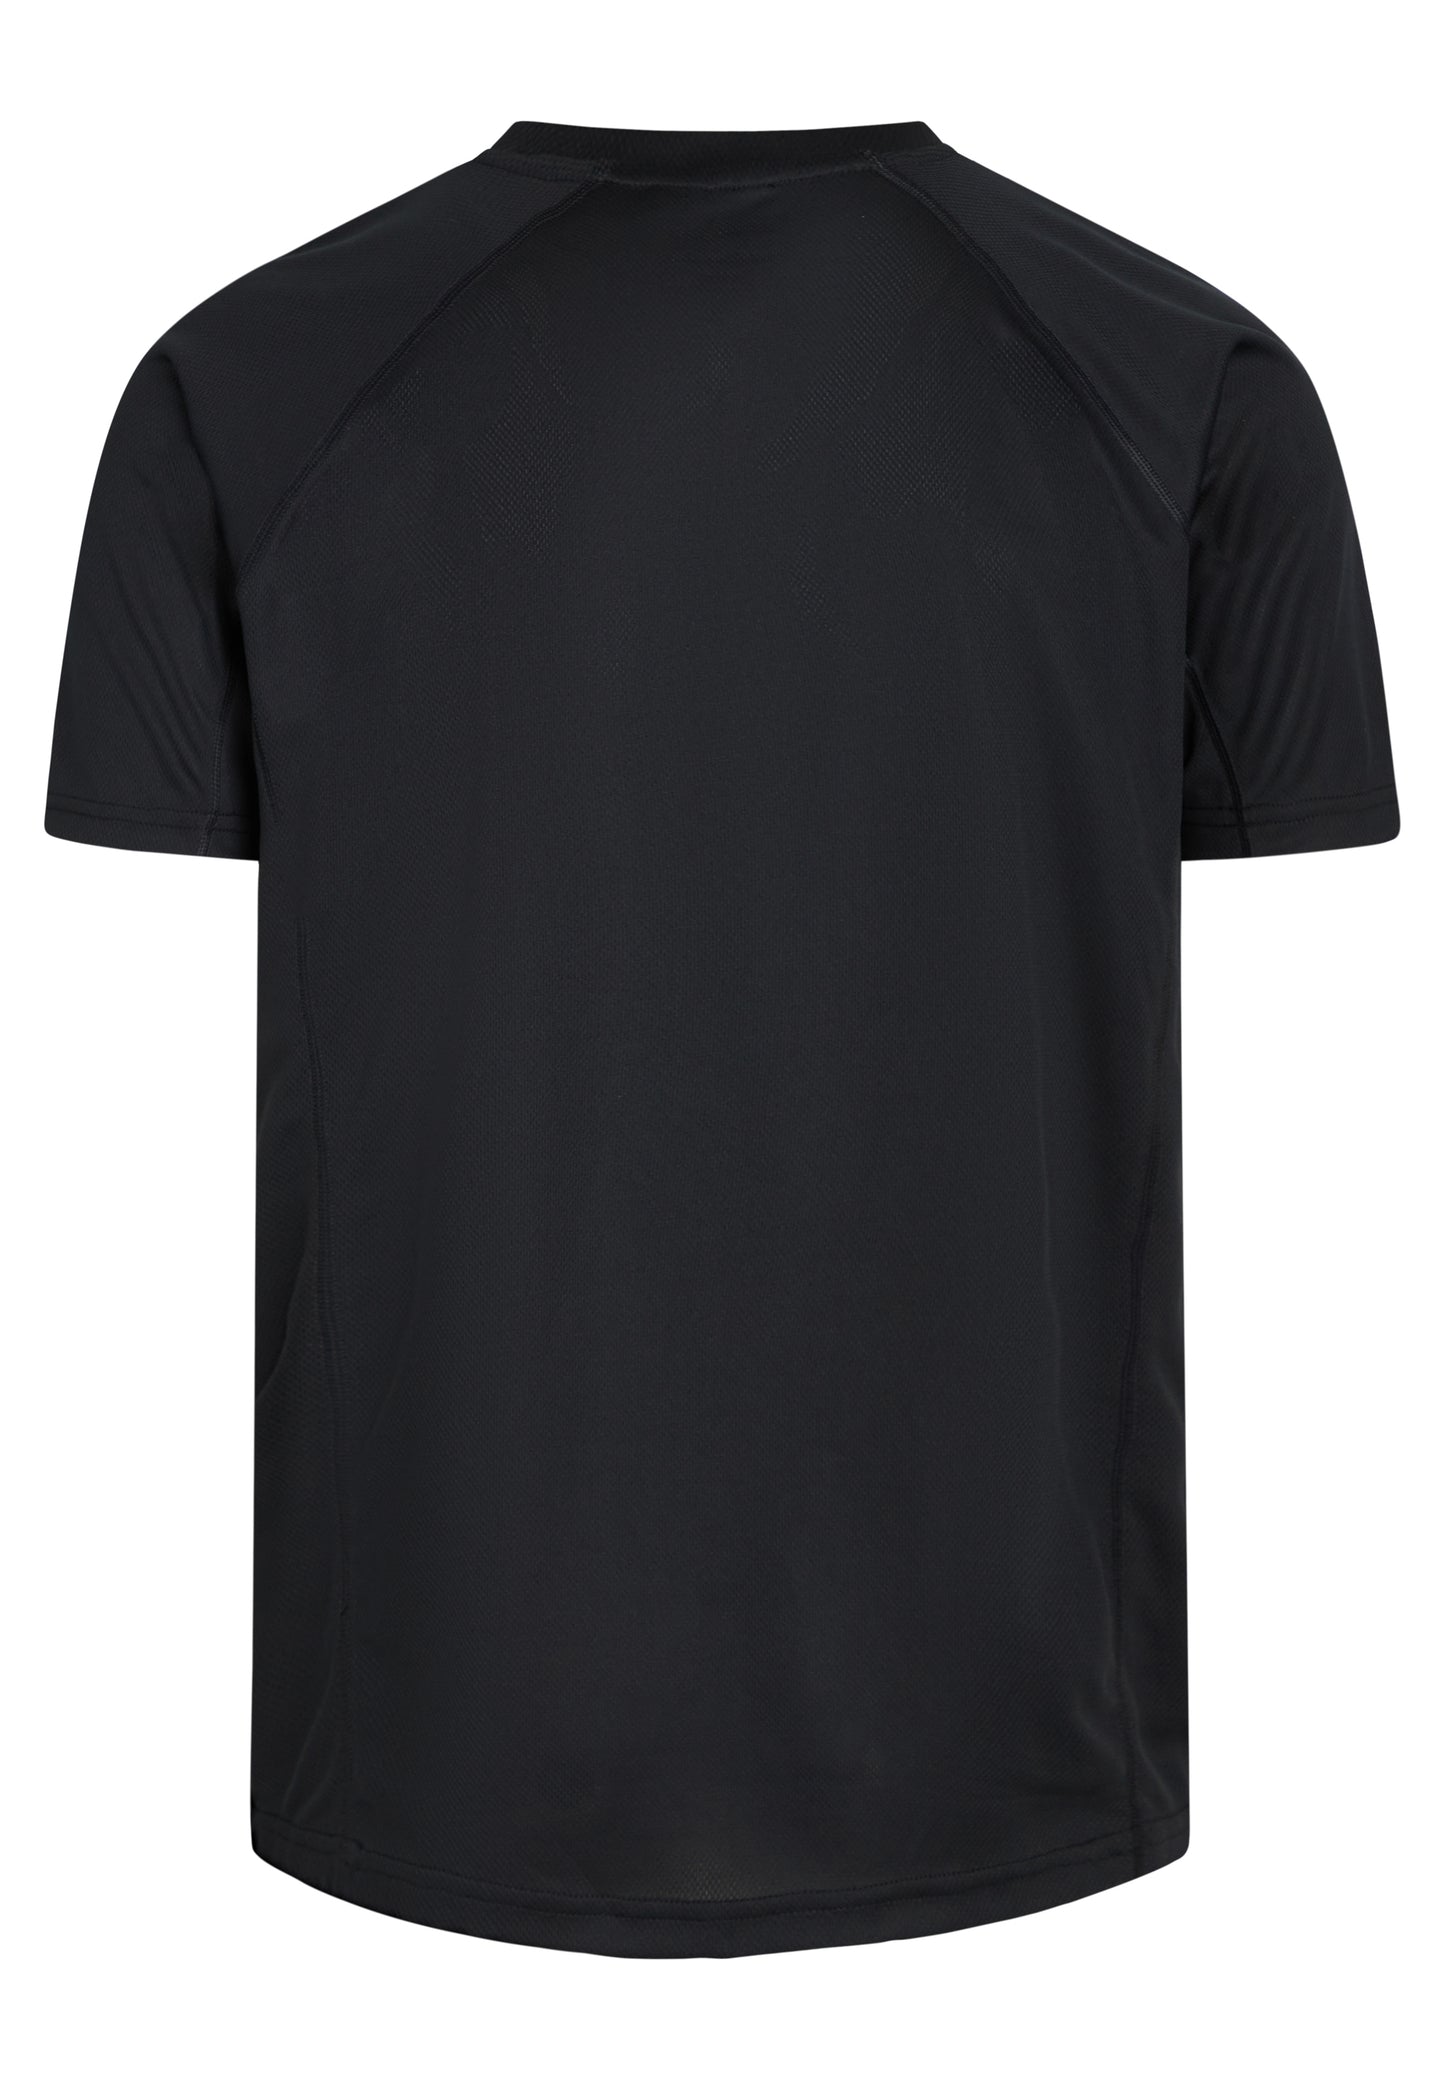 Zebdia Sports t-shirt til mænd sort